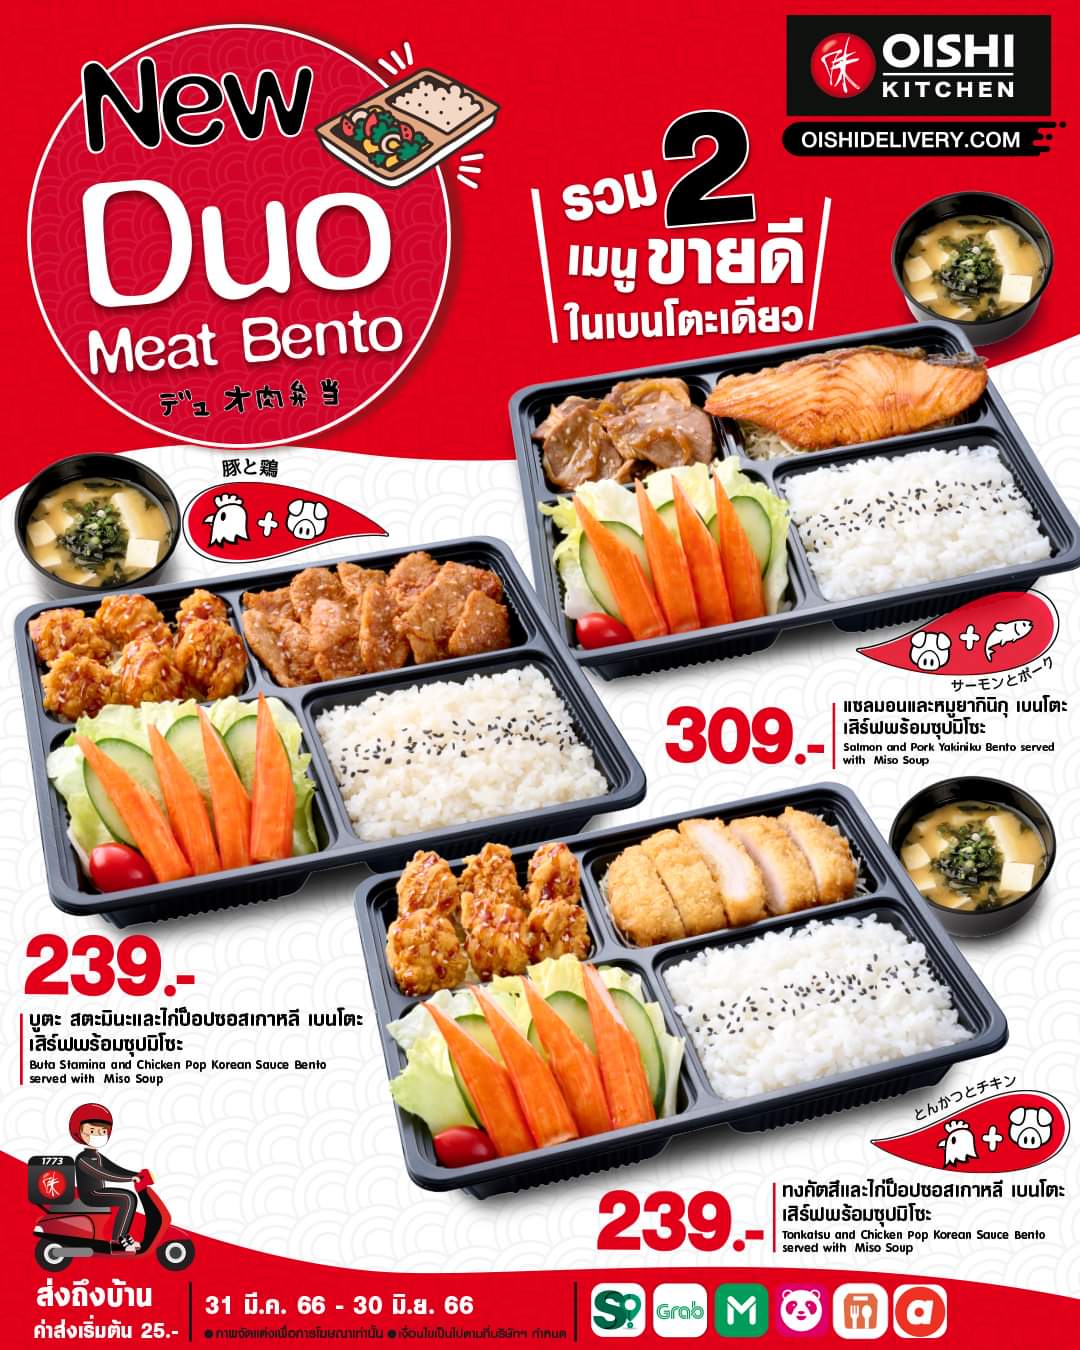 โปรโมชั่น โออิชิ : Oishi Kitchen จัดให้! กับ "Duo Meat Bento" รวมความอร่อย 2 สไตล์ไว้ในกล่องเดียว